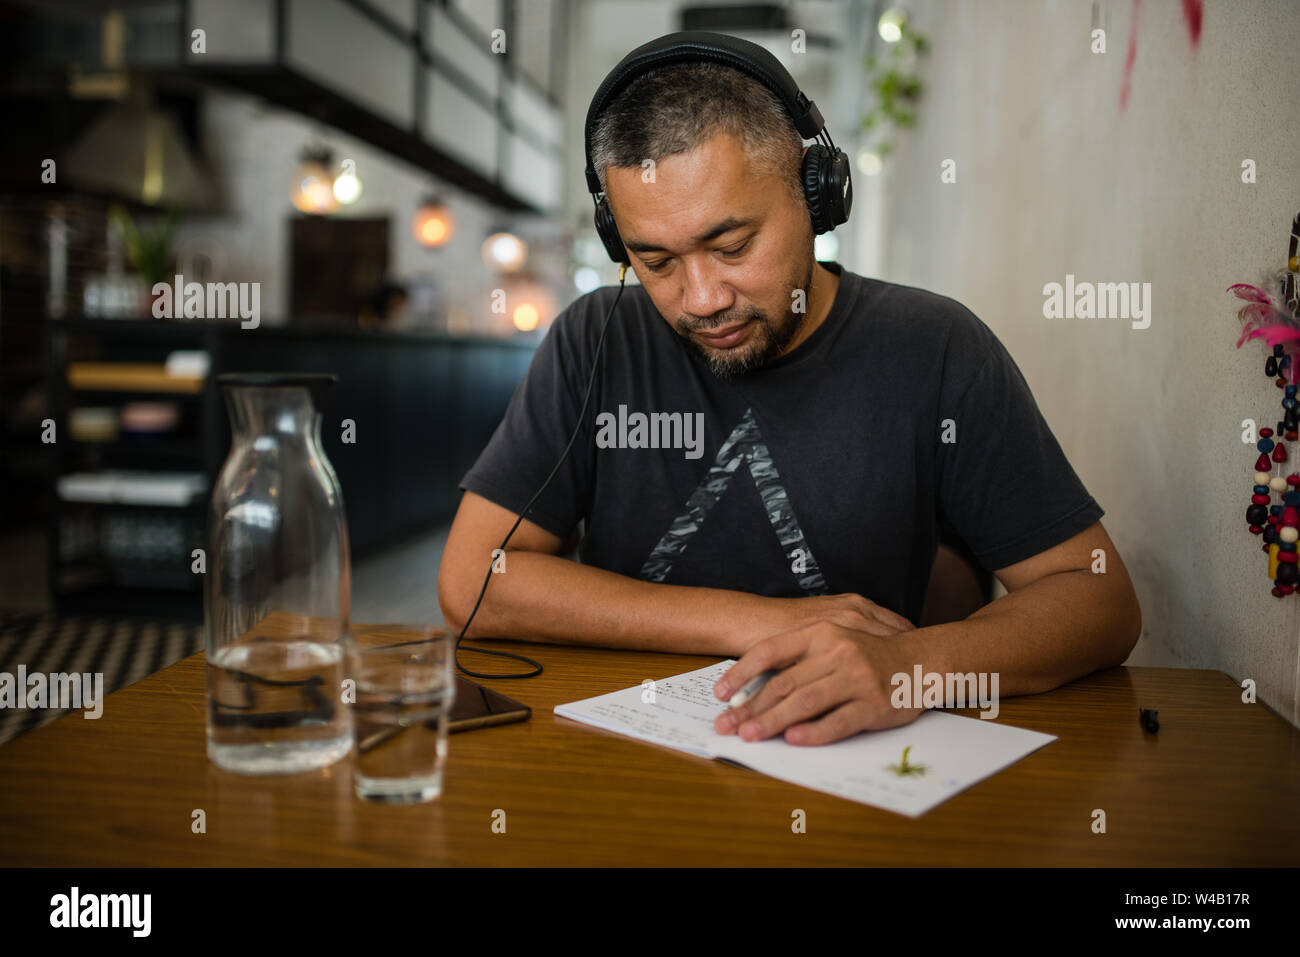 Asian man listening music on headphones Stock Photo